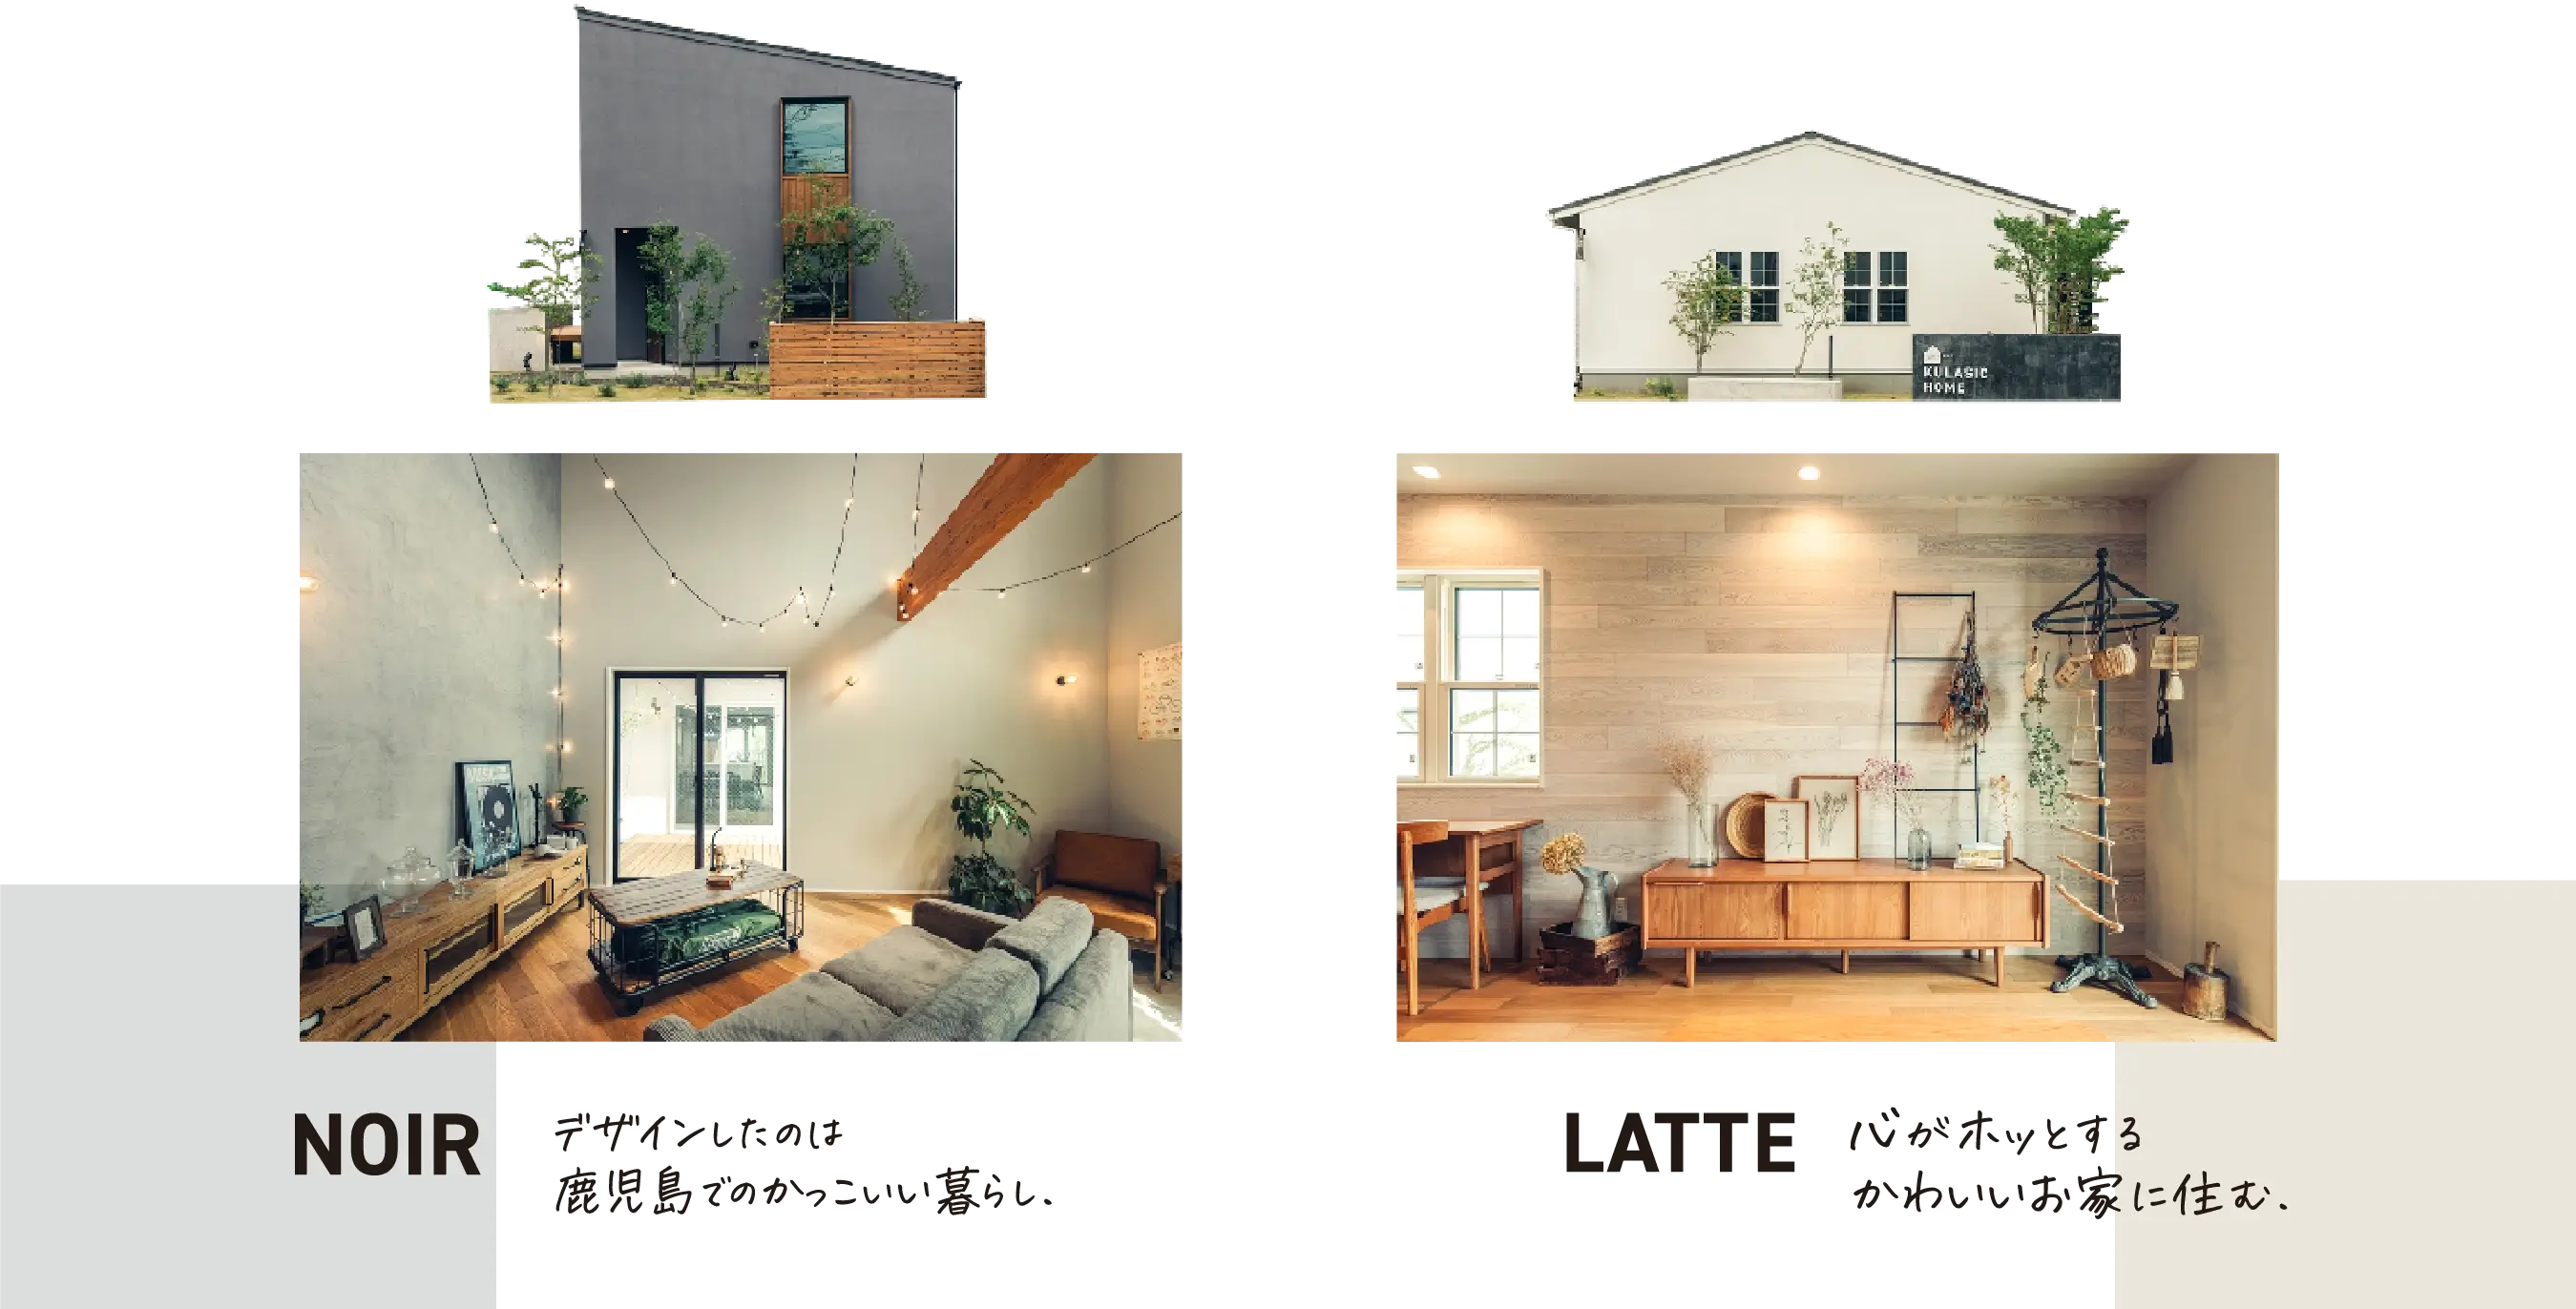 NOIR：デザインしたのは鹿児島でのかっこいい暮らし。LATTE：心がホッとするかわいいお家に住む。